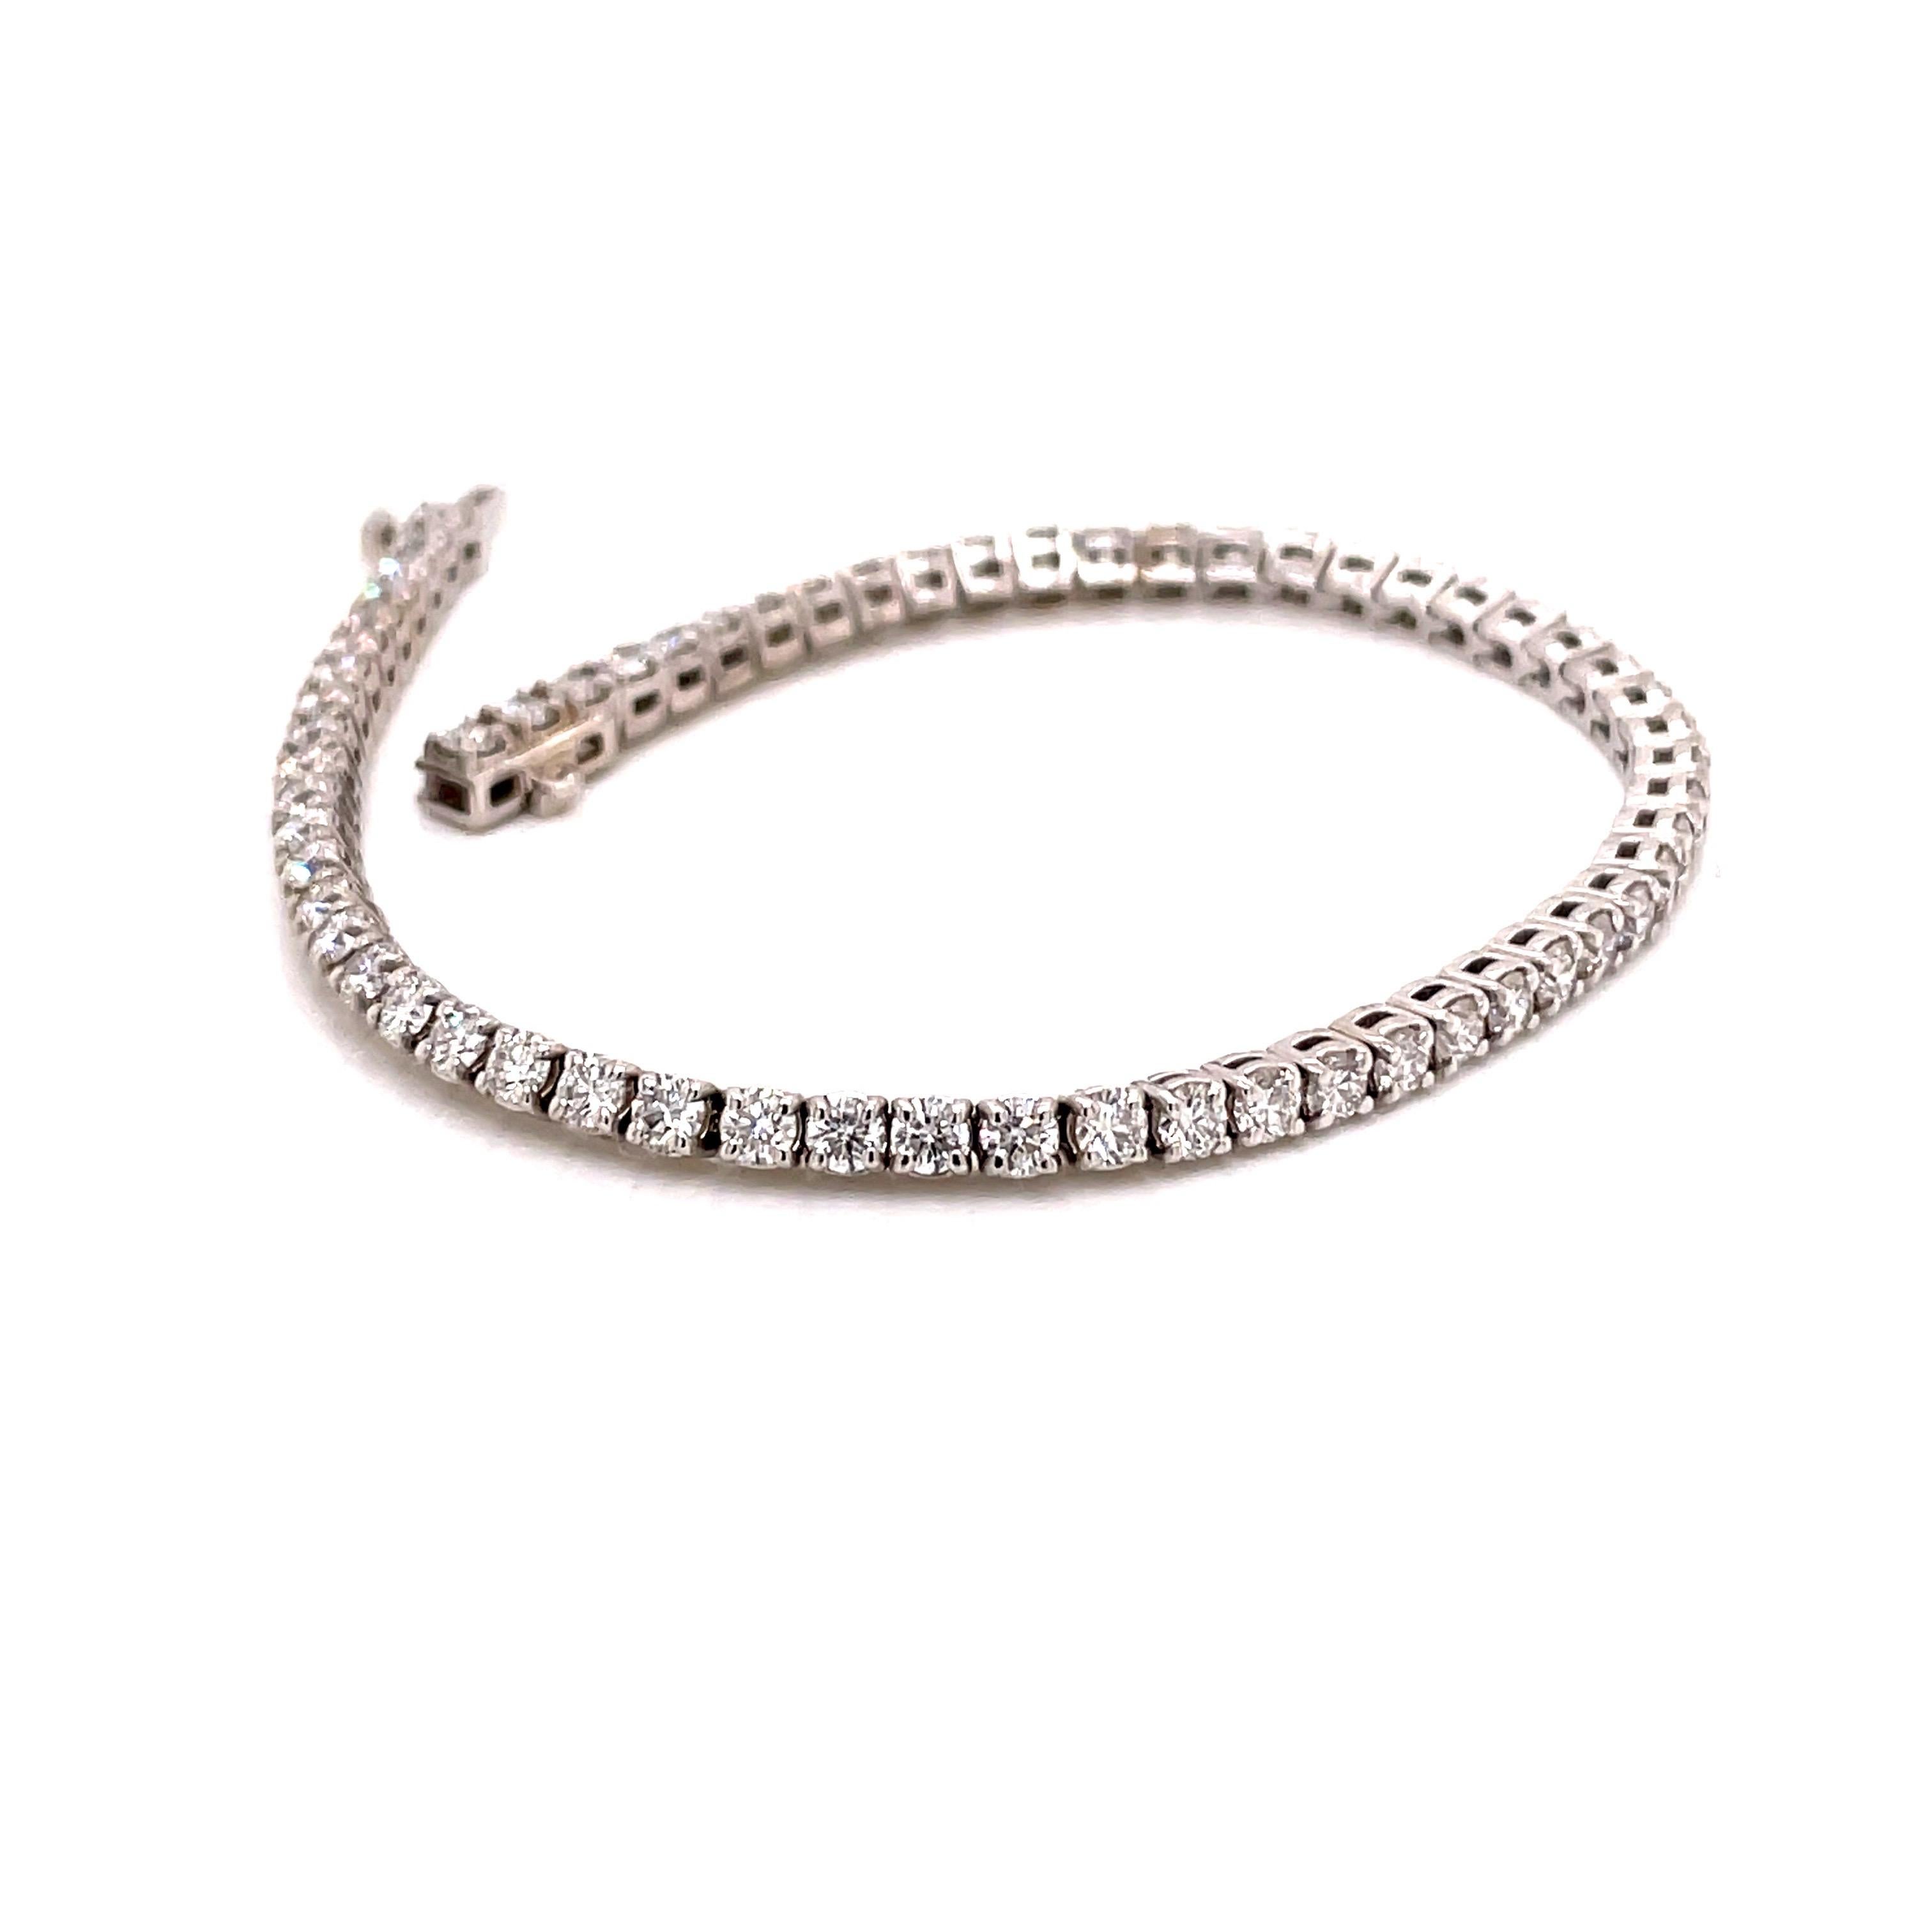 bracelet tennis en diamant 14KW 3.84ct - le bracelet contient 63 diamants ronds de taille brillant pesant 3.84ct avec une couleur E-F et une pureté SI1-SI2. Les diamants sont de taille idéale et sont sertis dans une corbeille à quatre griffes. Le